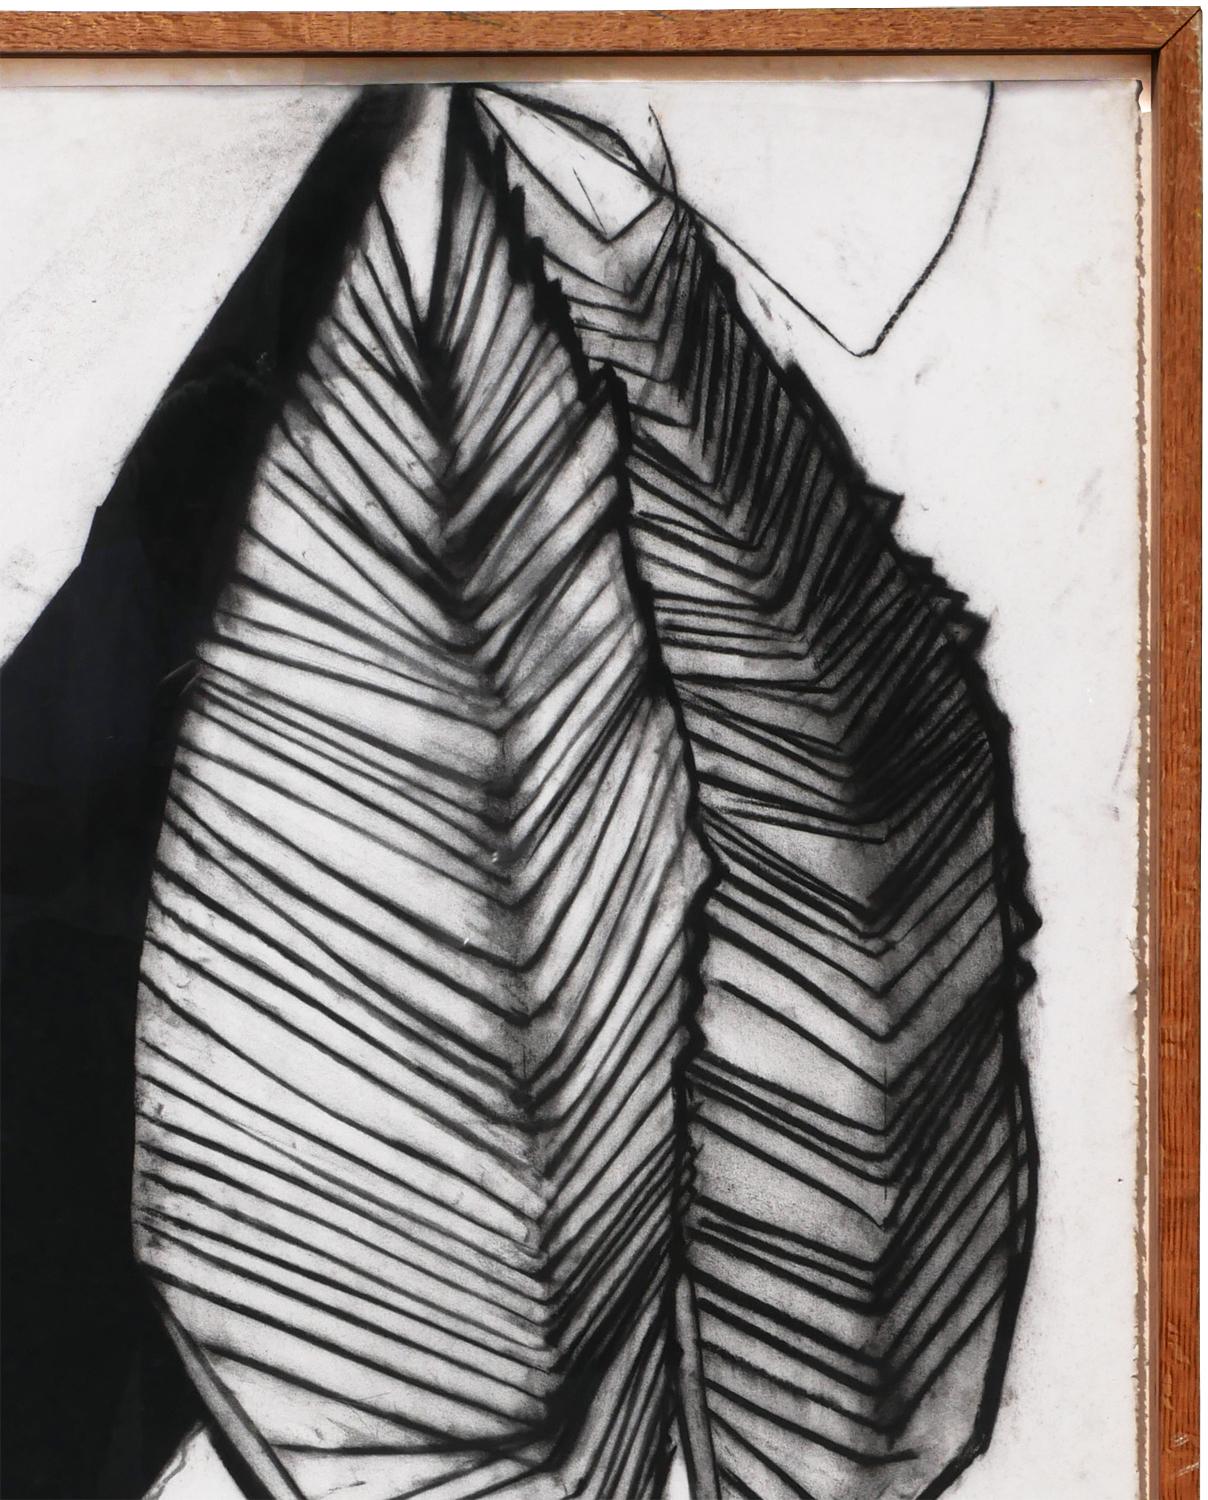 Schwarz-weiße abstrakte Kohlezeichnung des Houstoner Künstlers Paul Forsythe. Das Werk zeigt eine große, abstrakte, organische Form in der oberen rechten Ecke der Komposition. Derzeit in einem hellen, schwebenden Holzrahmen aufgehängt. 

Abmessungen